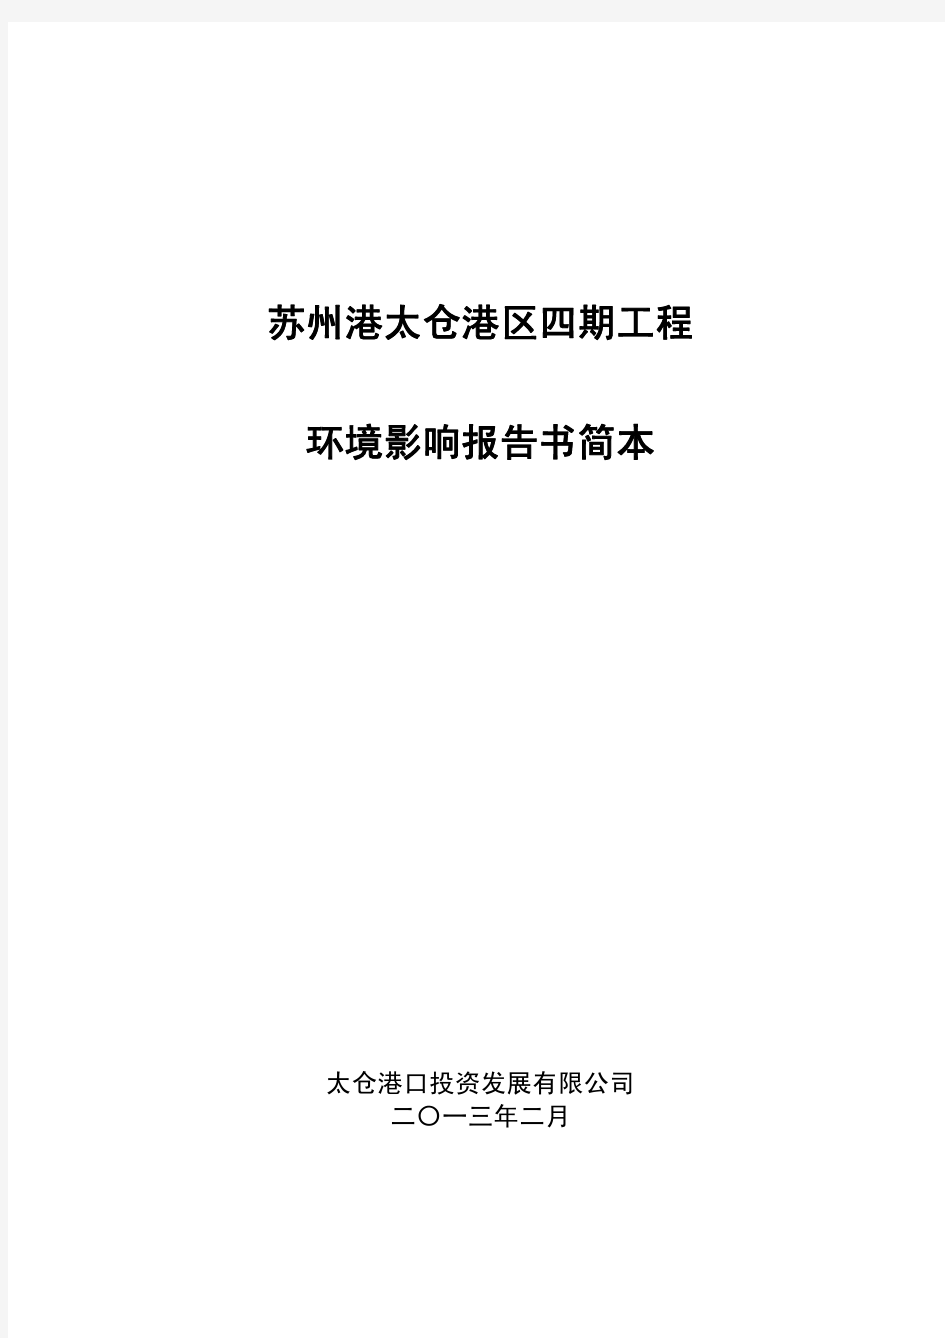 苏州港太仓港区四期工程环境影响报告书简本 - 环境影响评价司